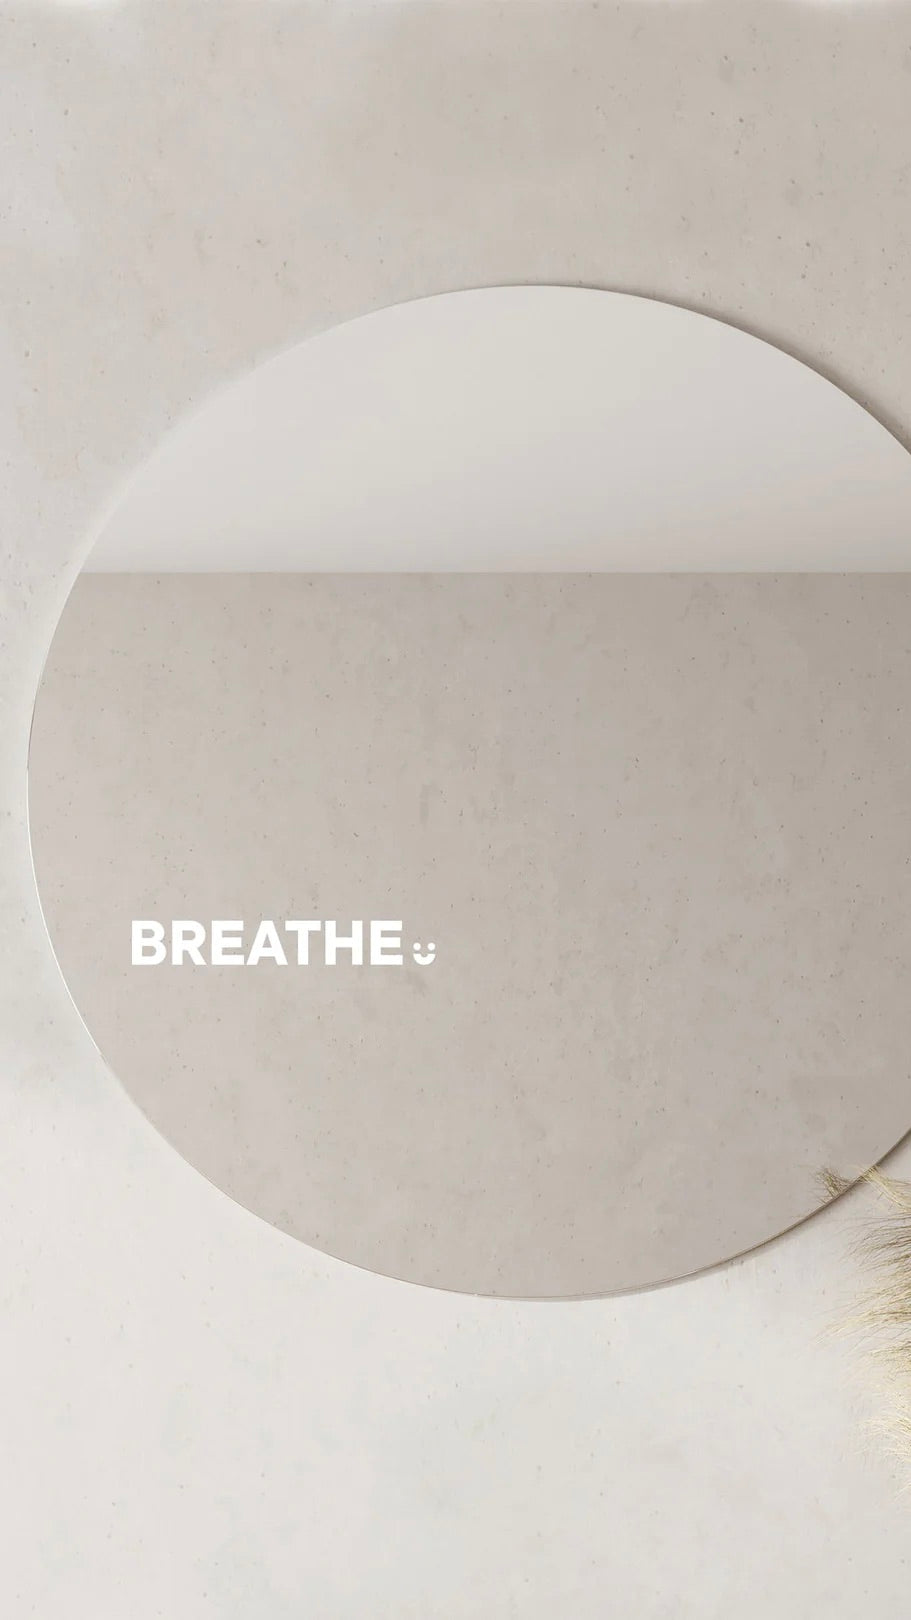 Breathe- Affirmation Mirror Sticker